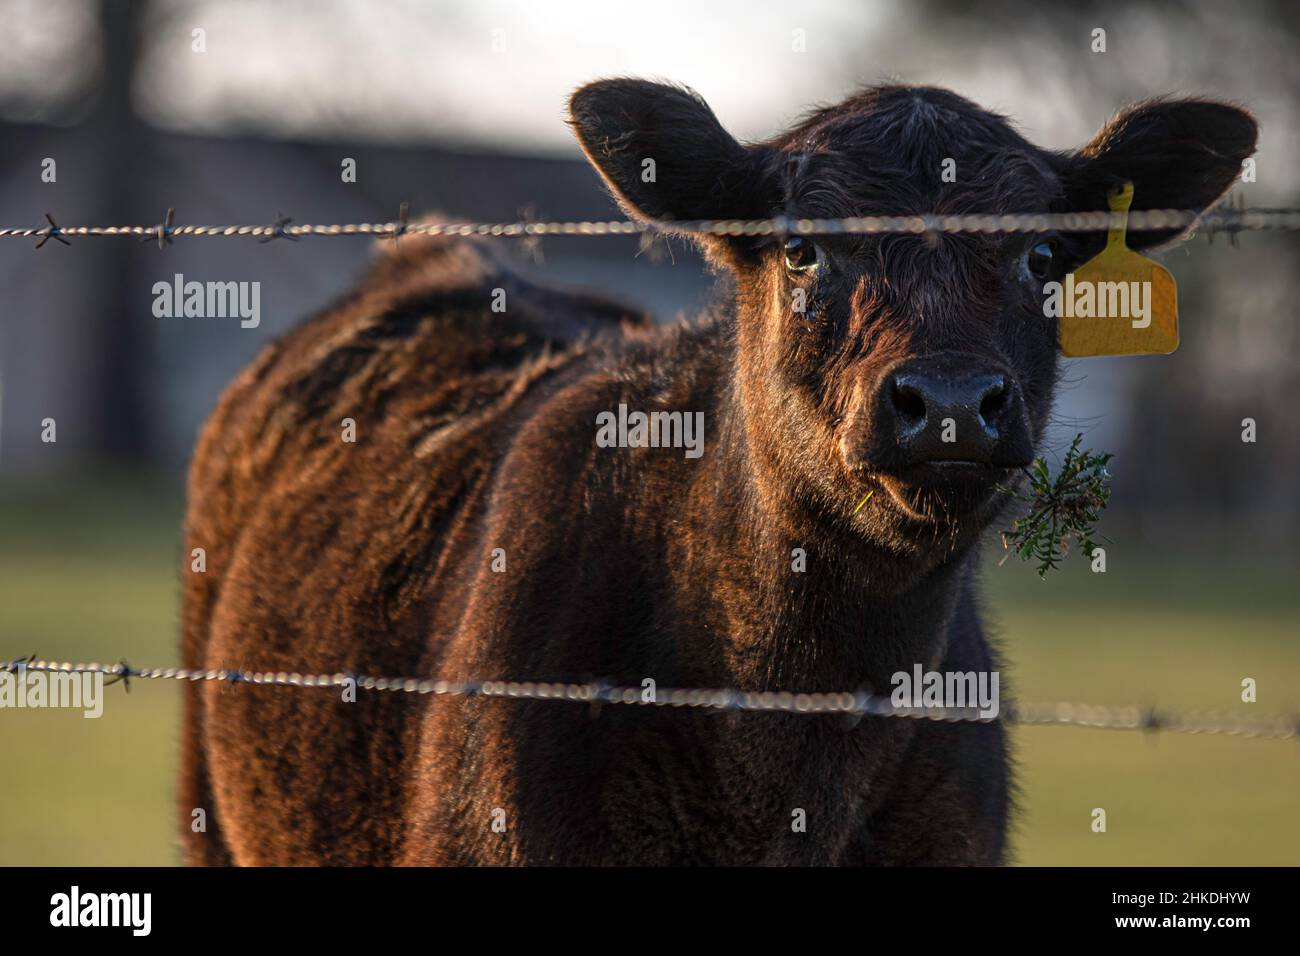 Vitello angus heifer con ramoscello in bocca guardando la macchina fotografica da dietro una recinzione filo spinato. Foto Stock